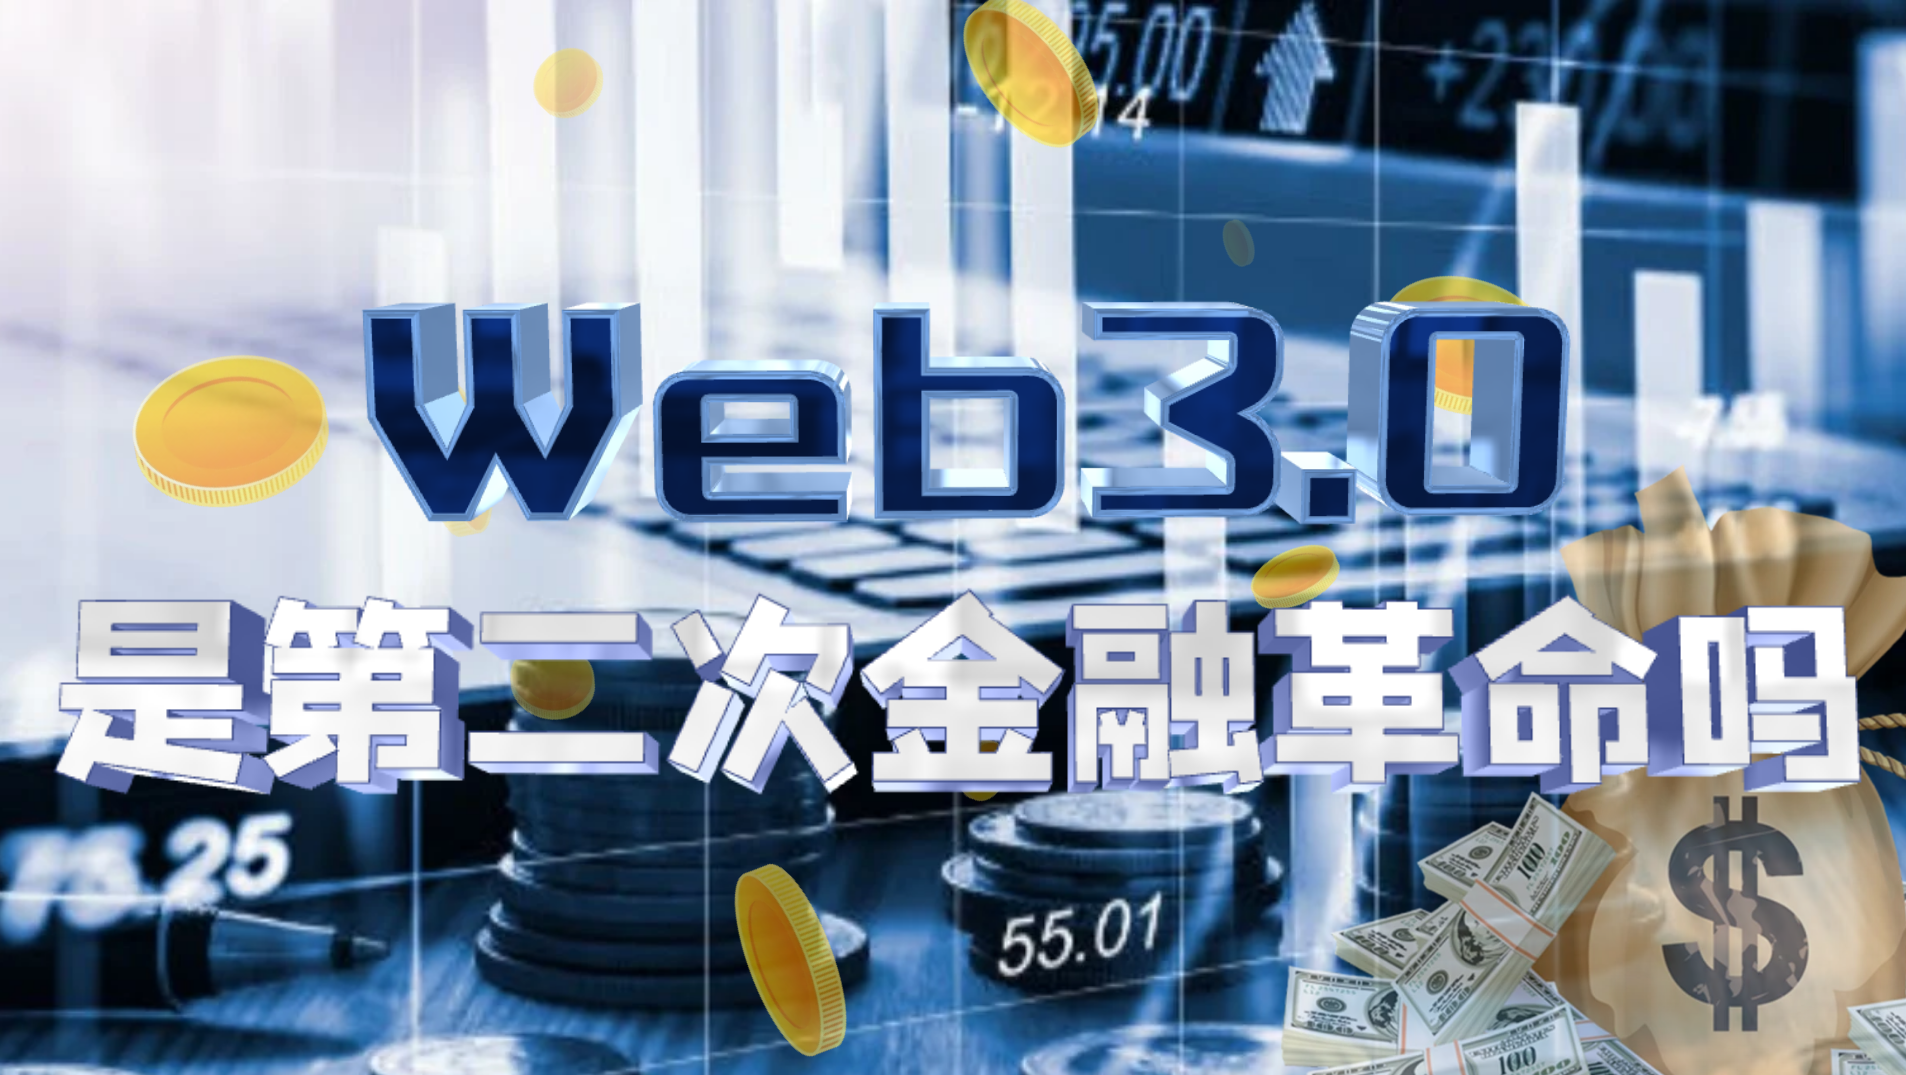 Web3.0“圈地运动”正在发生